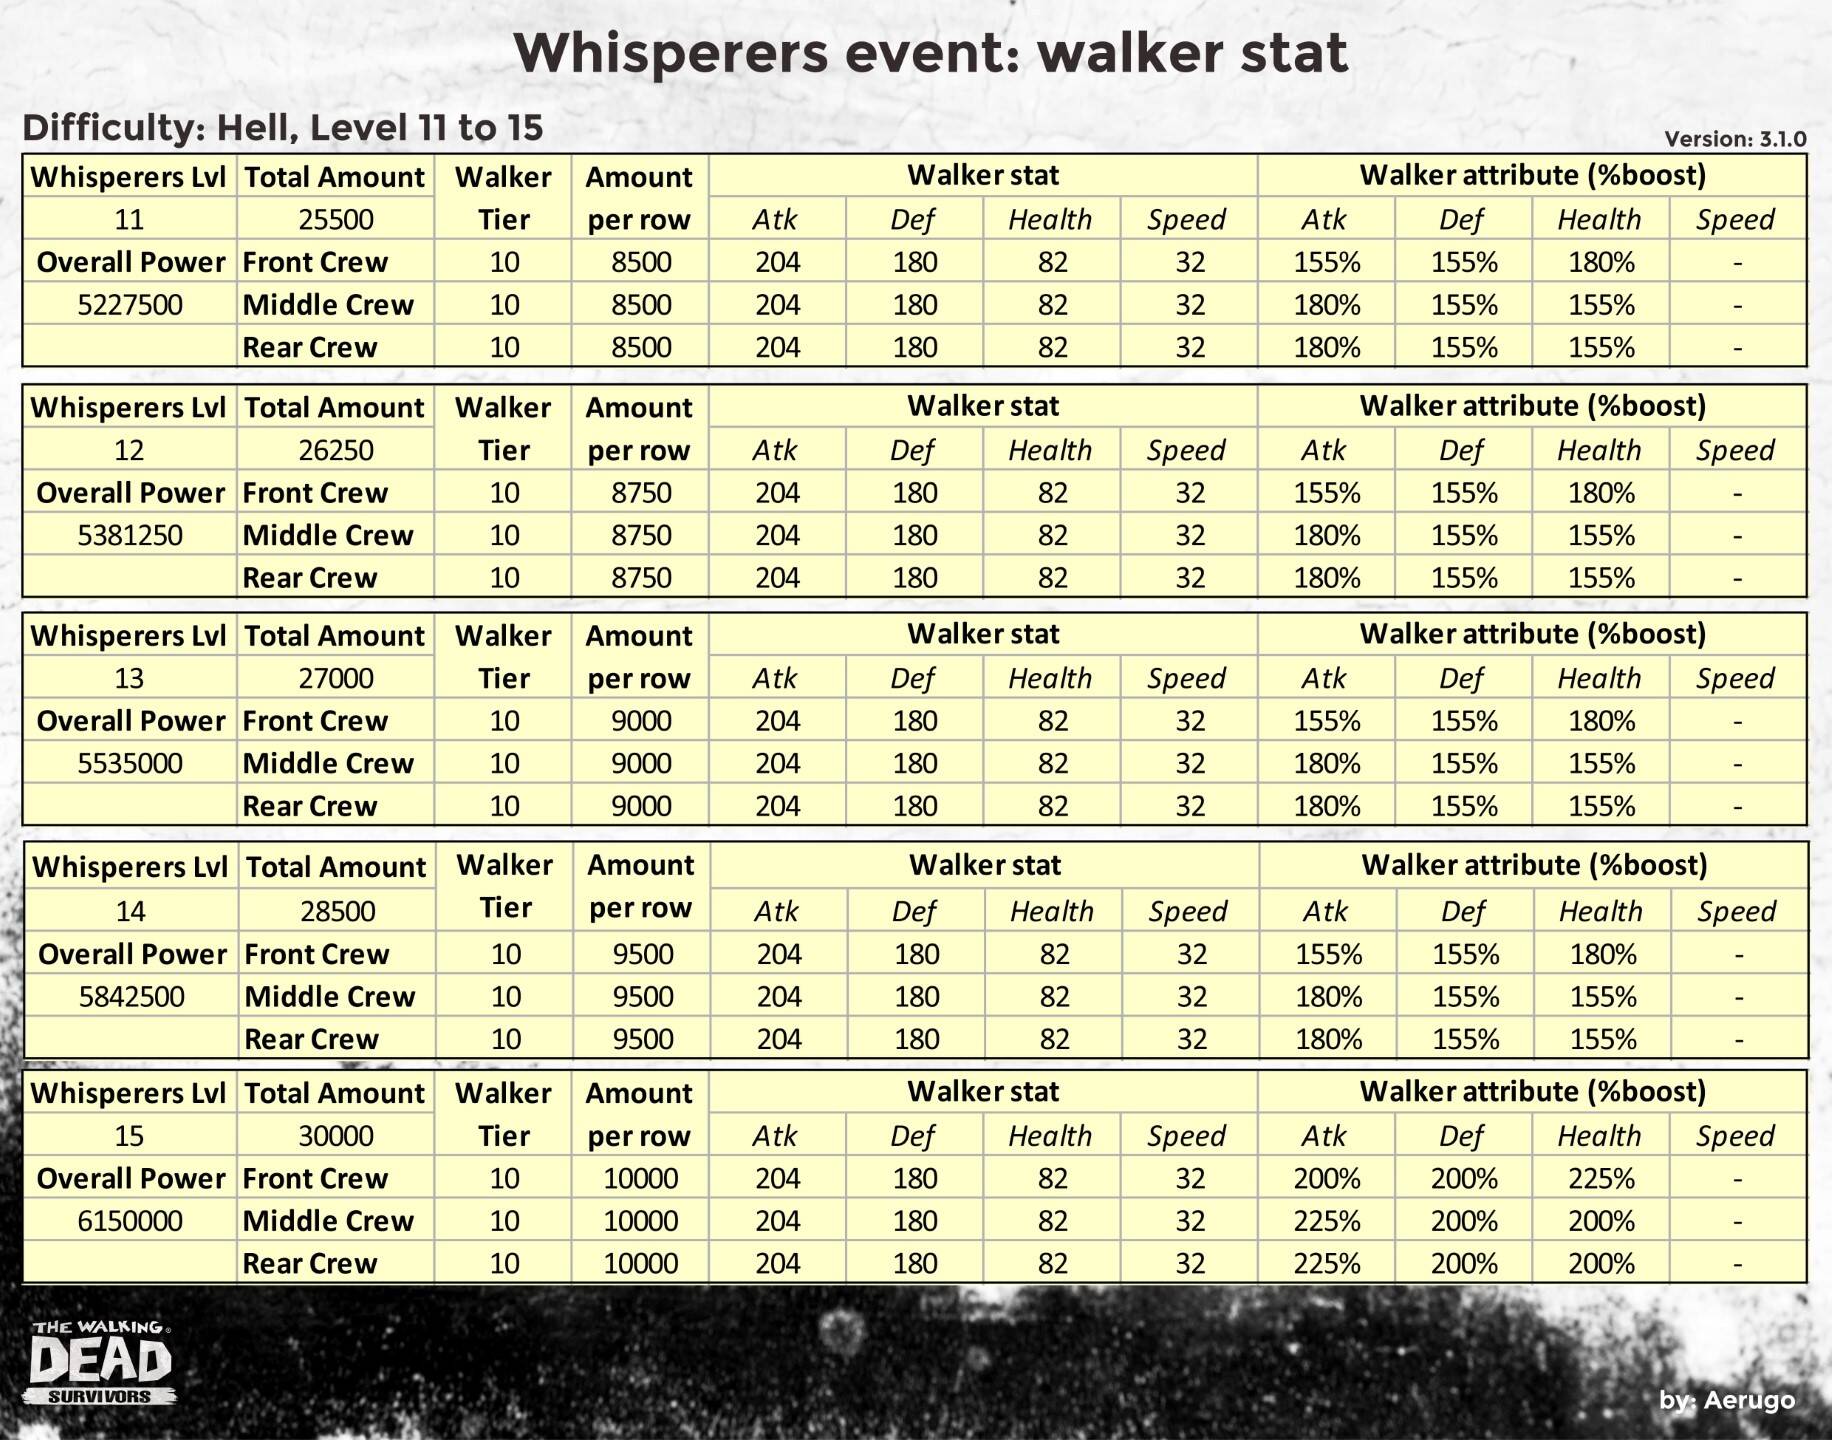 Whisperers_walkerstat_v3.1.0_part19 (1).jpg